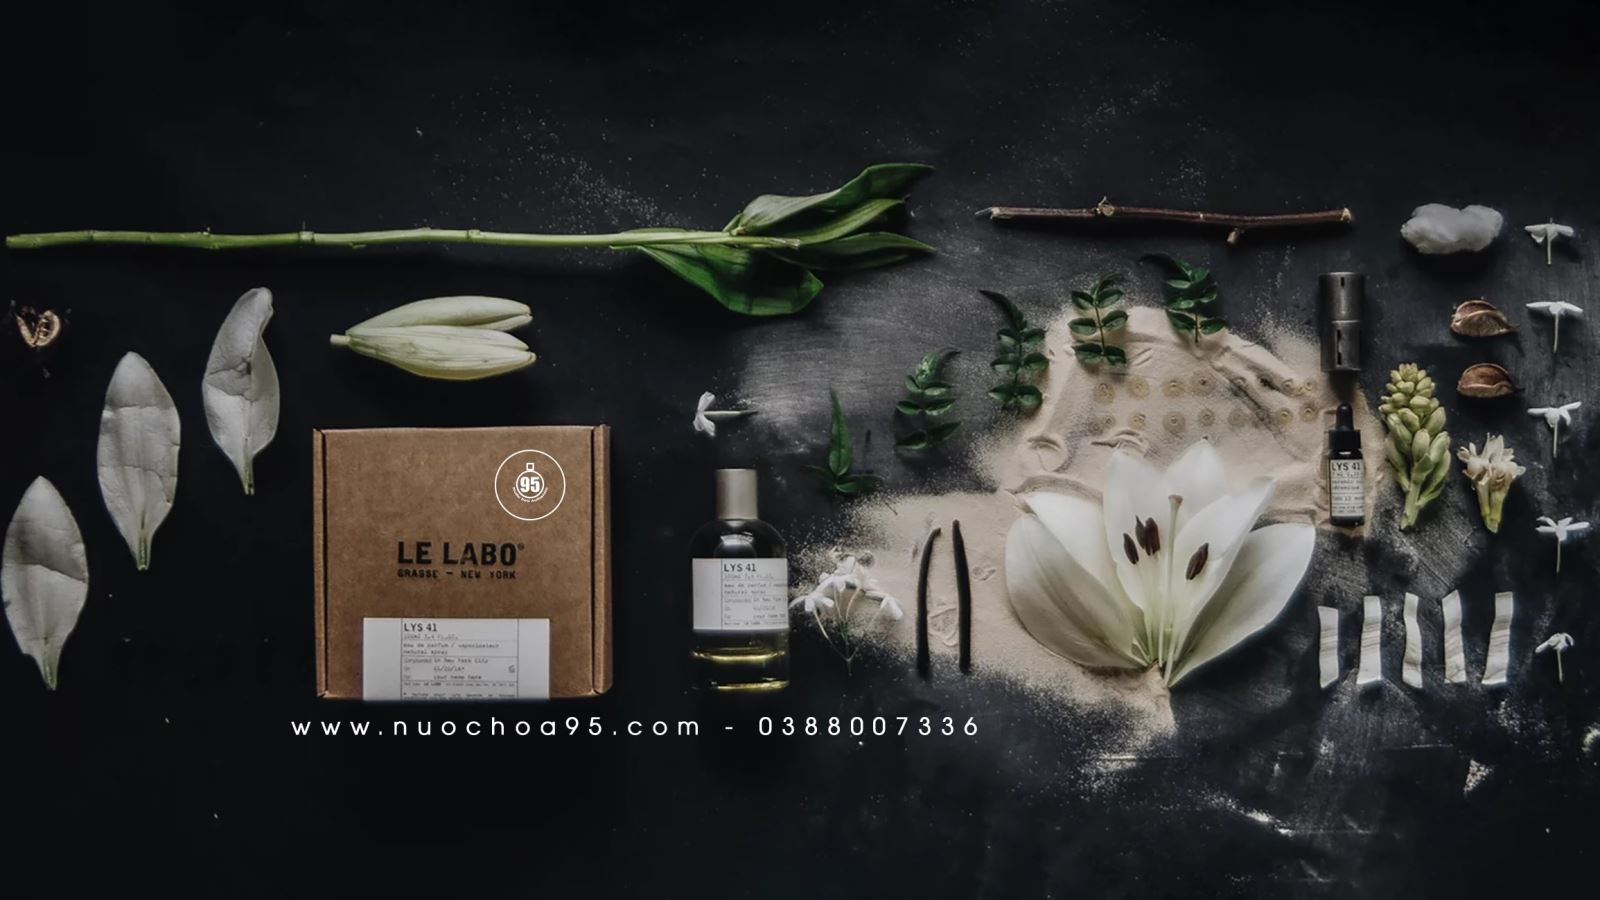 Top nước hoa Le Labo bán chạy nhất tại Việt Nam - Ảnh 7